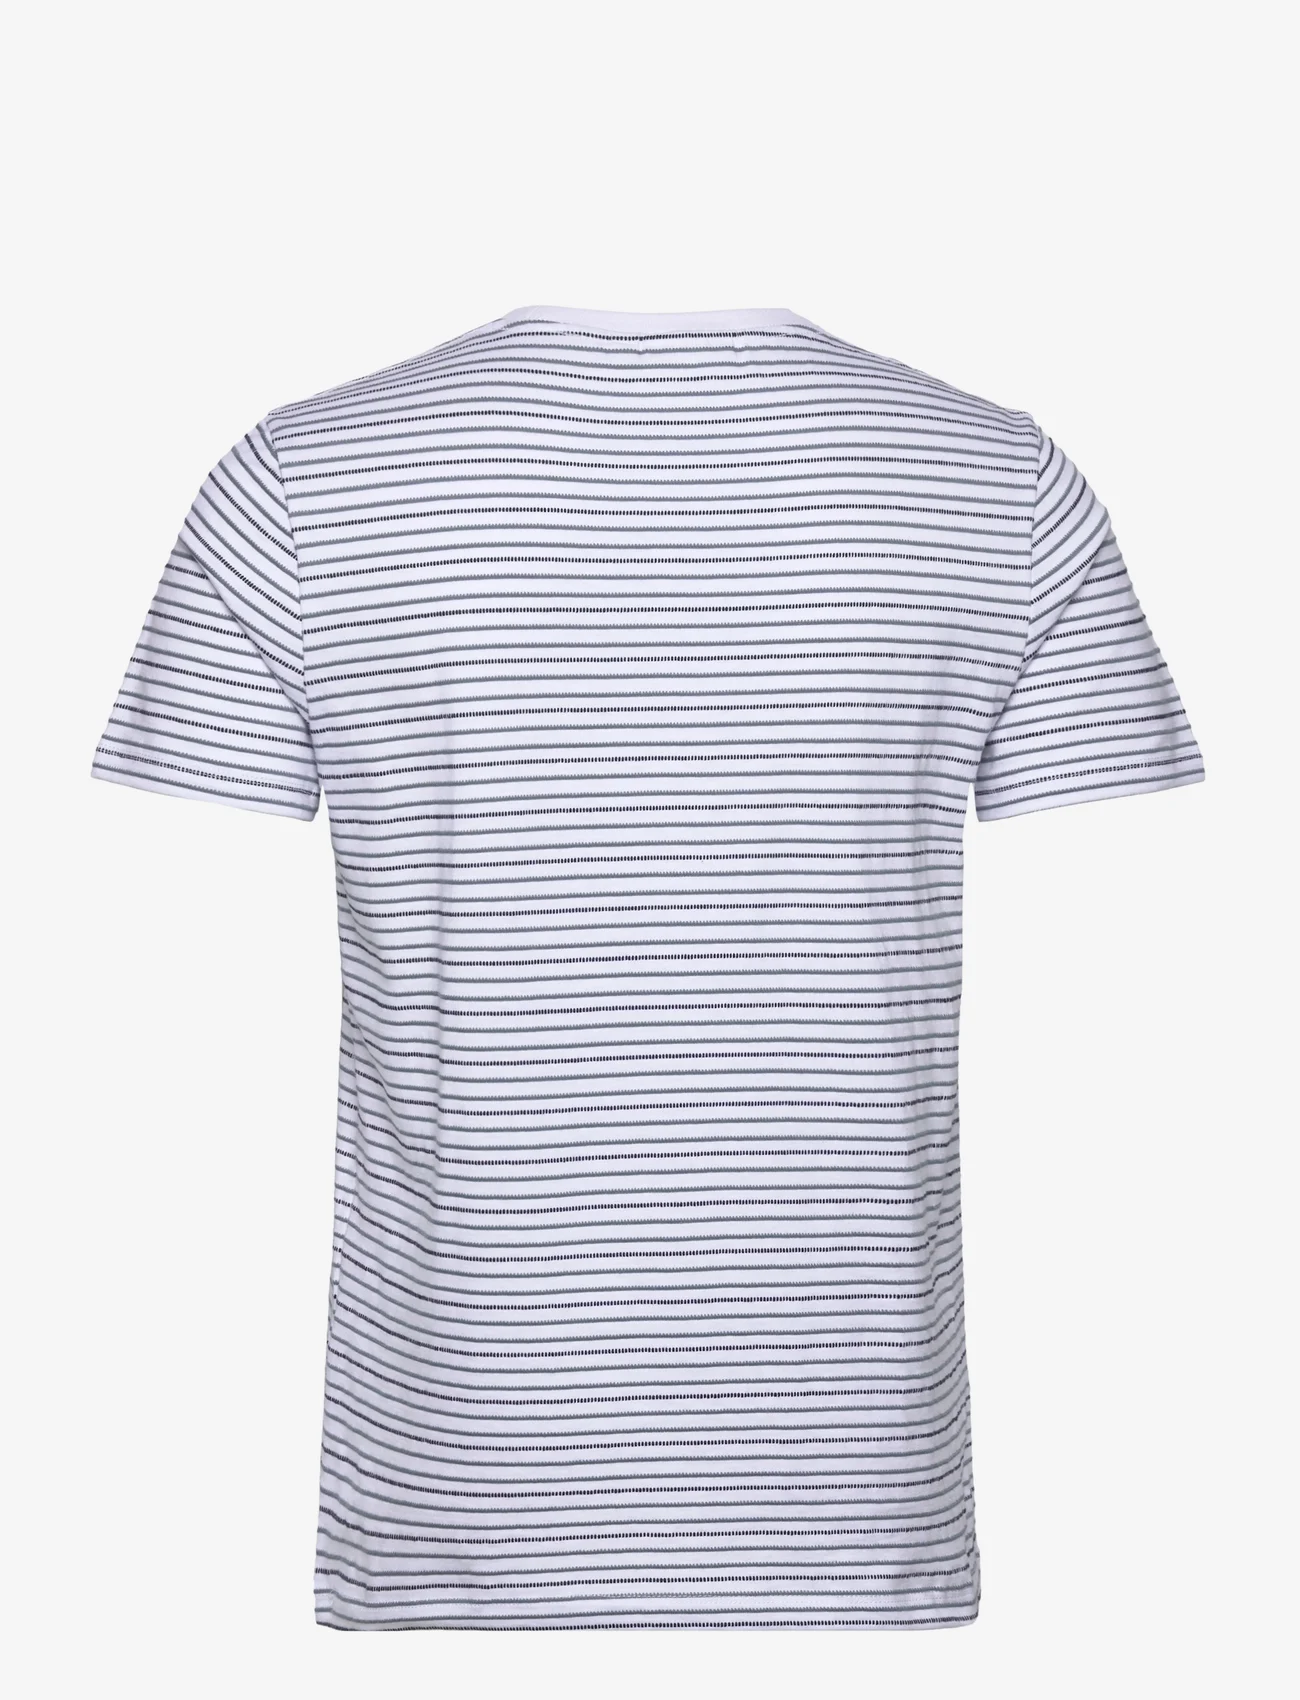 Garcia - men`s T-shirt ss - kortermede t-skjorter - white - 1